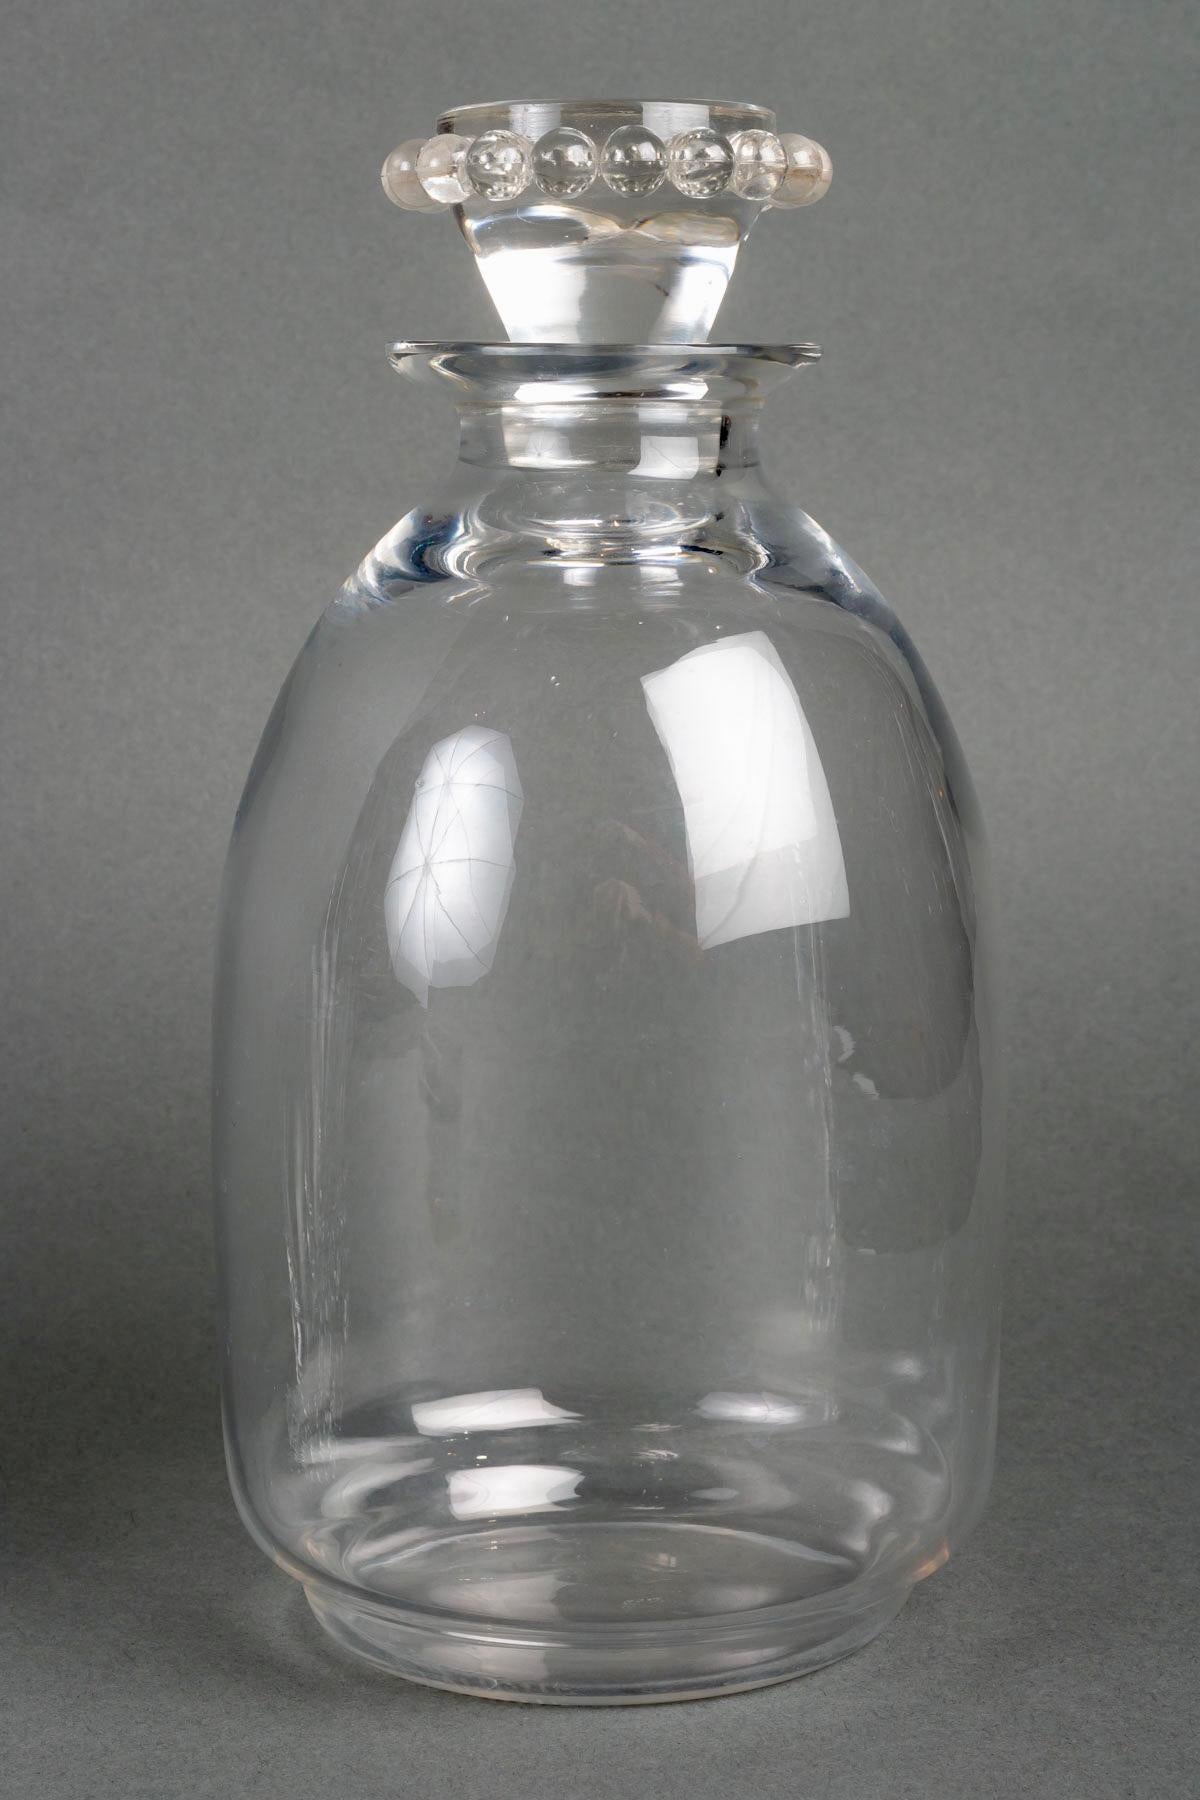 Art Glass 1935 René Lalique, Tablewares Glasses Decanters Boules Glass, 34 Pieces For Sale